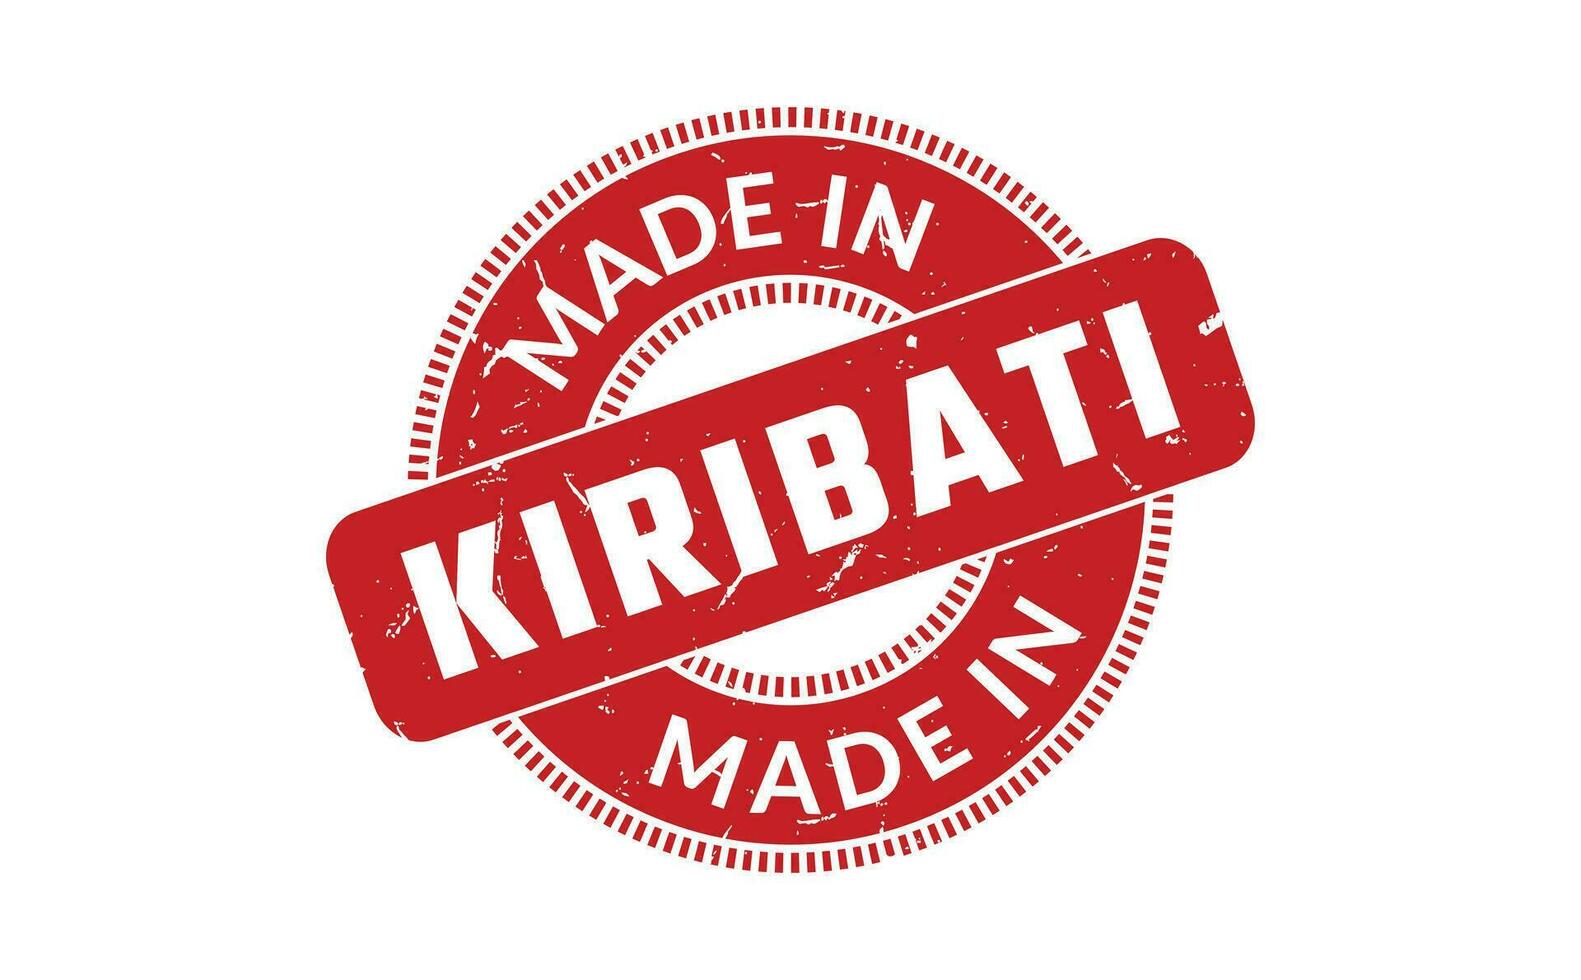 gemaakt in Kiribati rubber postzegel vector